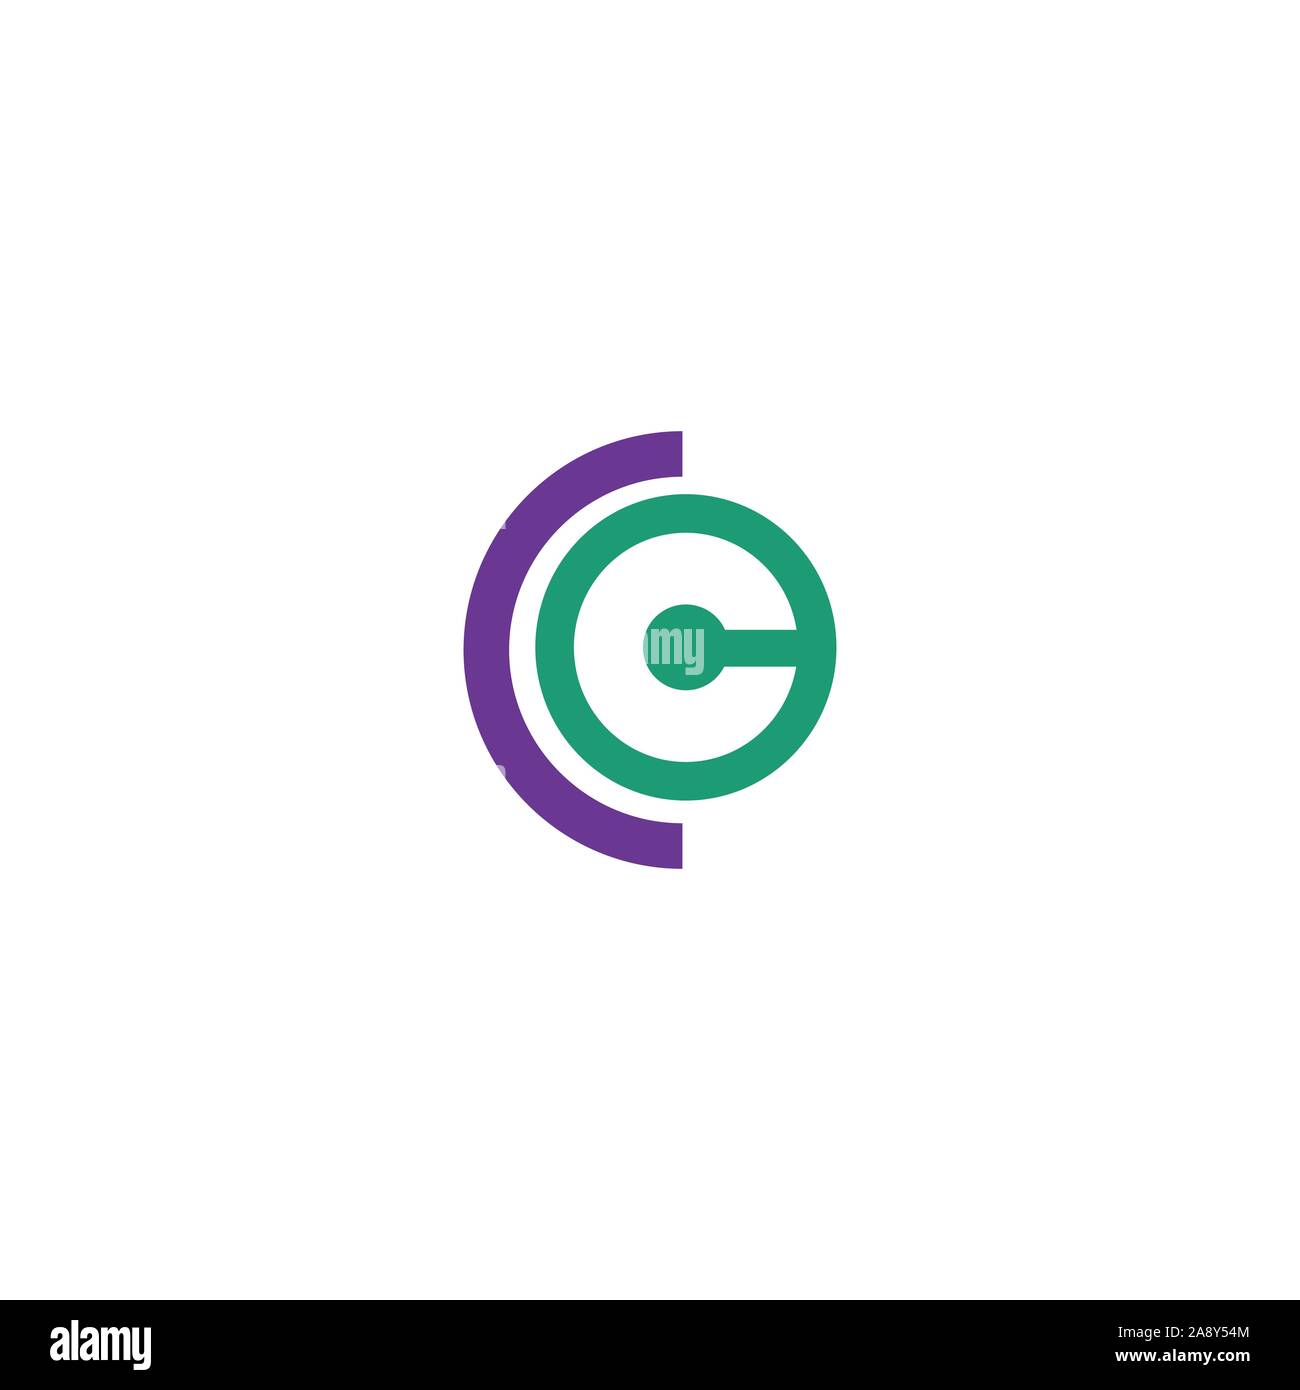 Initial CE oder EG logo Vektor Logo Design Stock Vektor